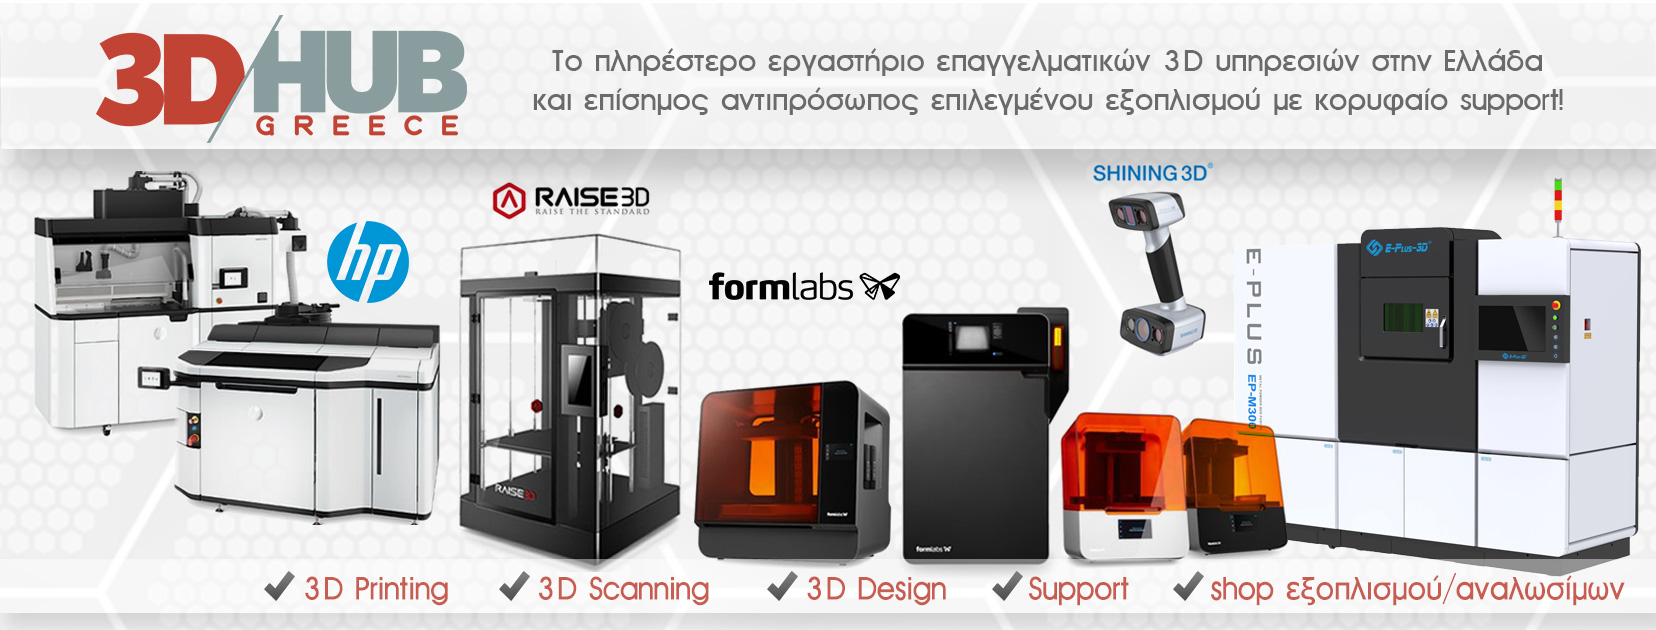 3DHUB Greece 3D Printing 3D Scanning τρισδιάστατη εκτύπωση τρισδιάστατη σάρωση Αθήνα Θεσσαλονίκη 3D εκτυπωτές